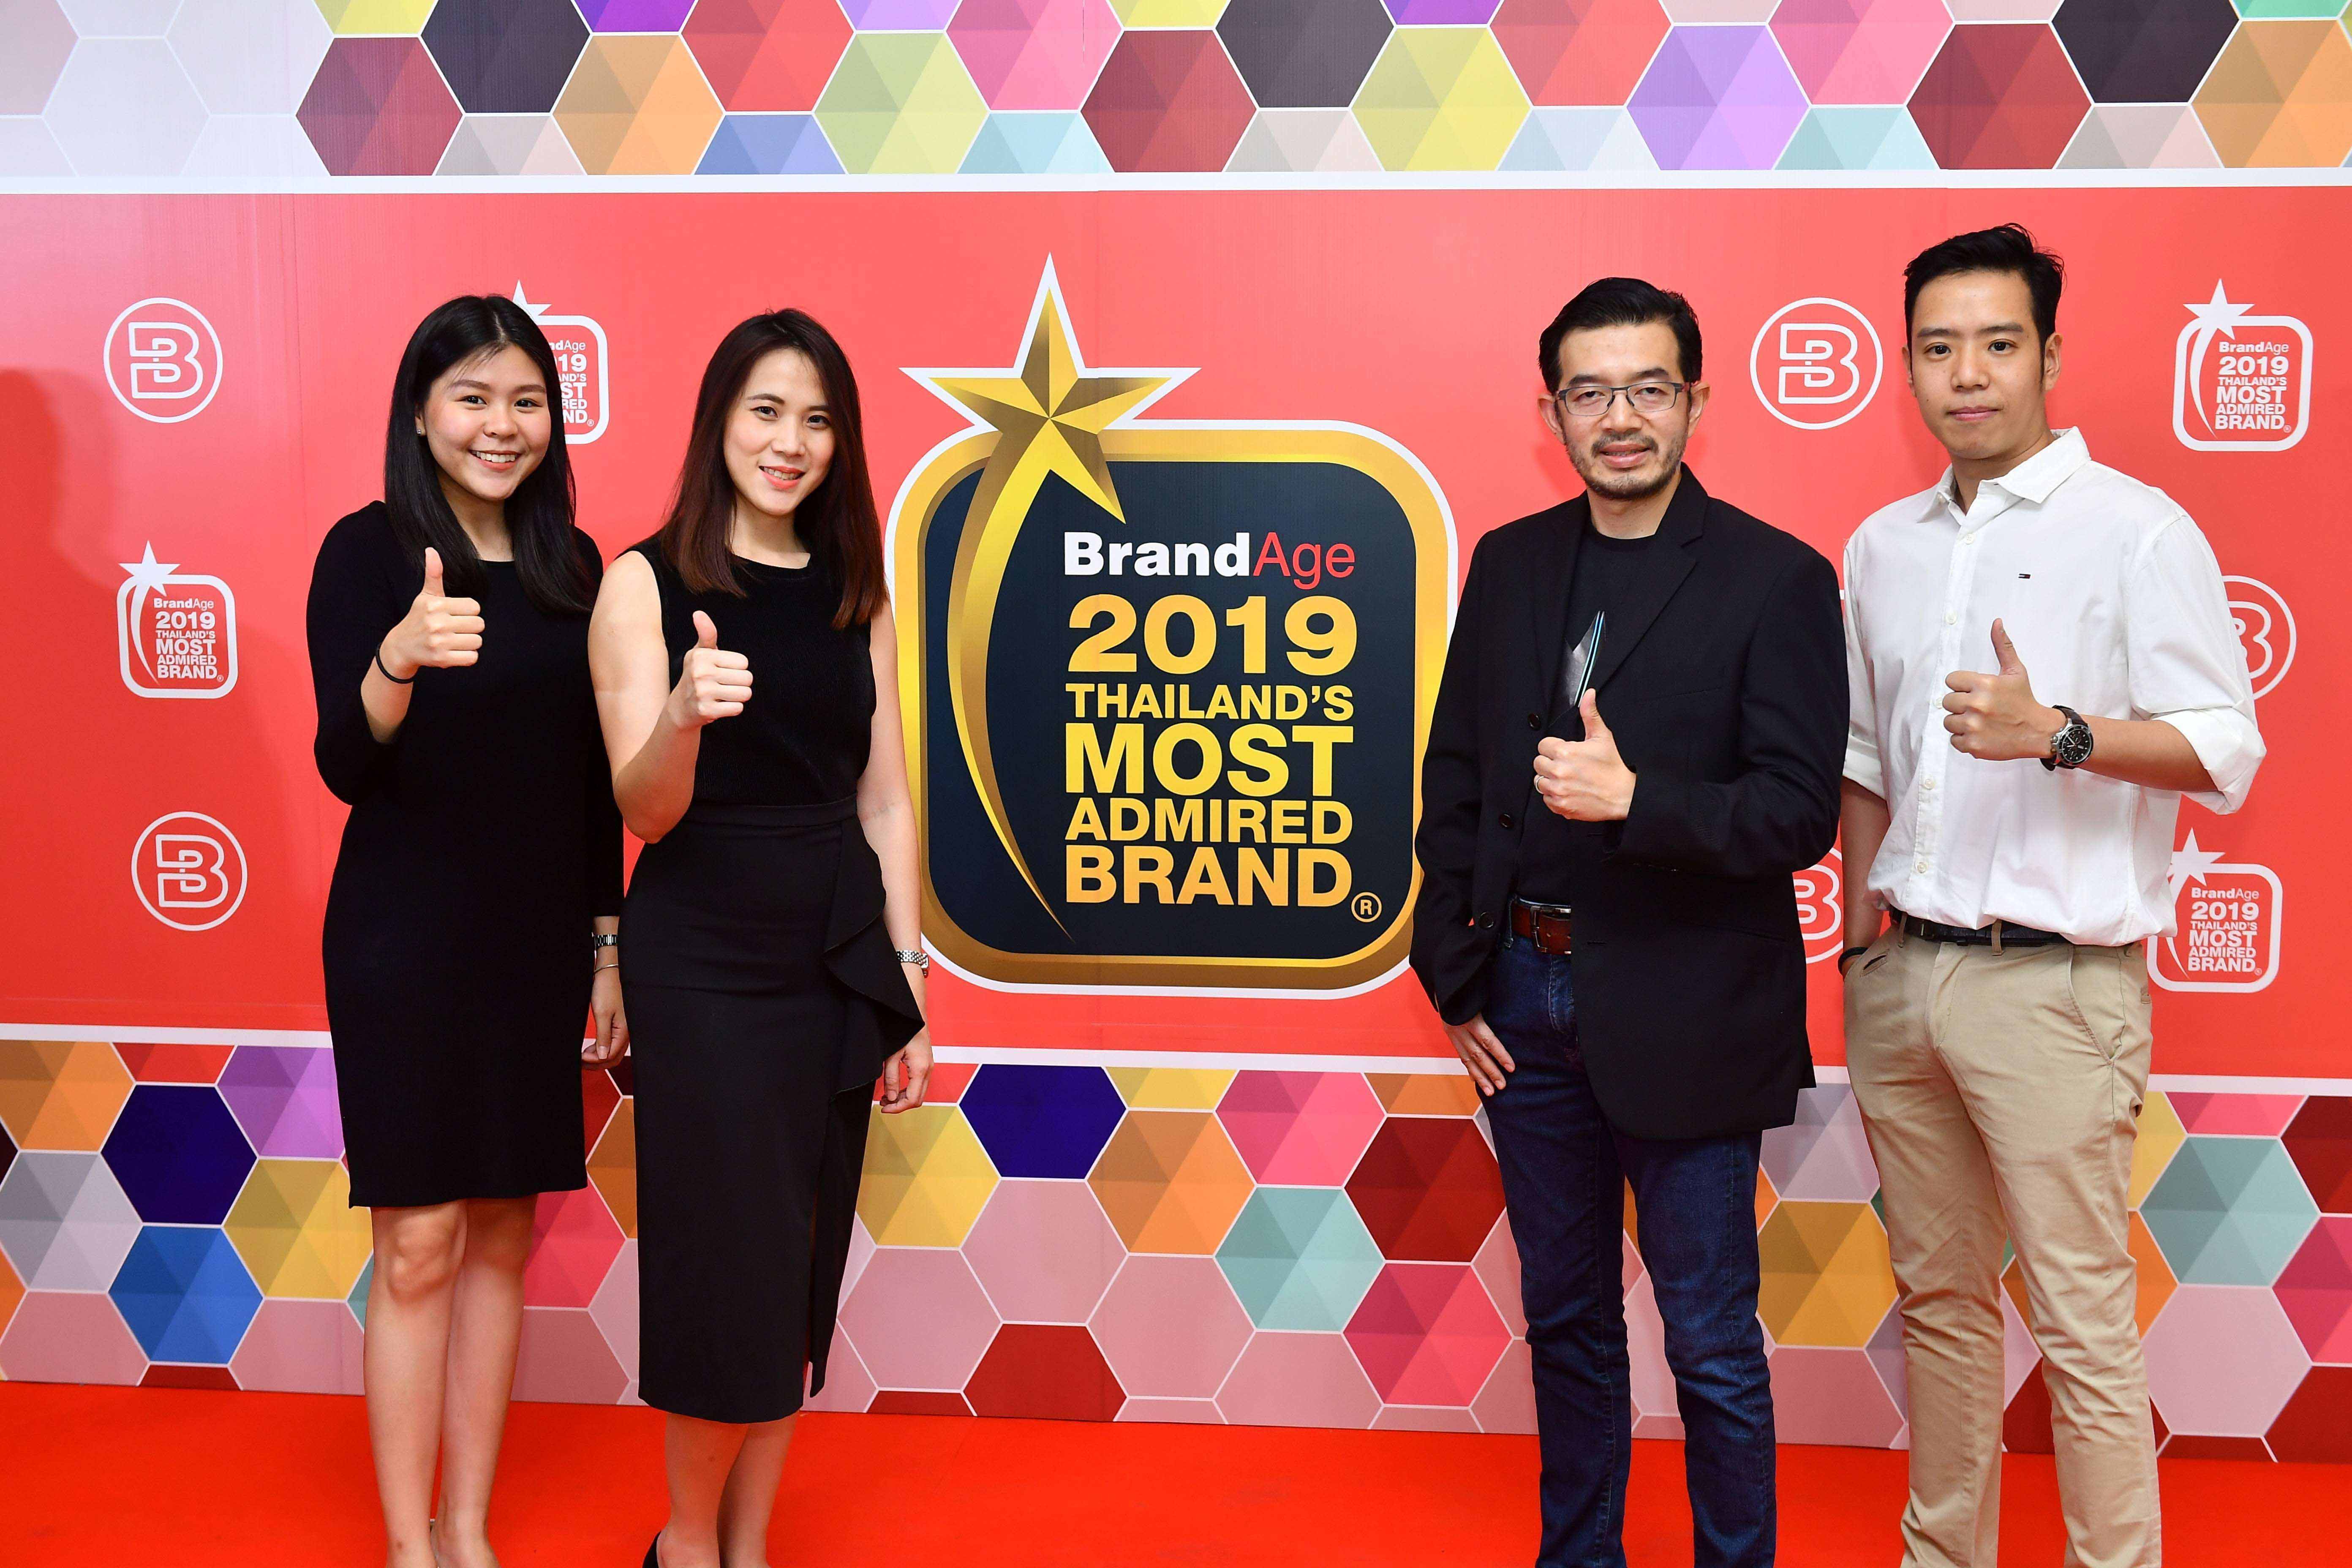 เอเซอร์ ย้ำภาพผู้นำนวัตกรรมไอที รับรางวัล Thailand’s Most Admired Brand 2019 สุดยอดแบรนด์ครองใจมหาชนเป็นปีที่ 9 ในกลุ่มคอมพิวเตอร์พกพาที่น่าเชื่อถือที่สุด